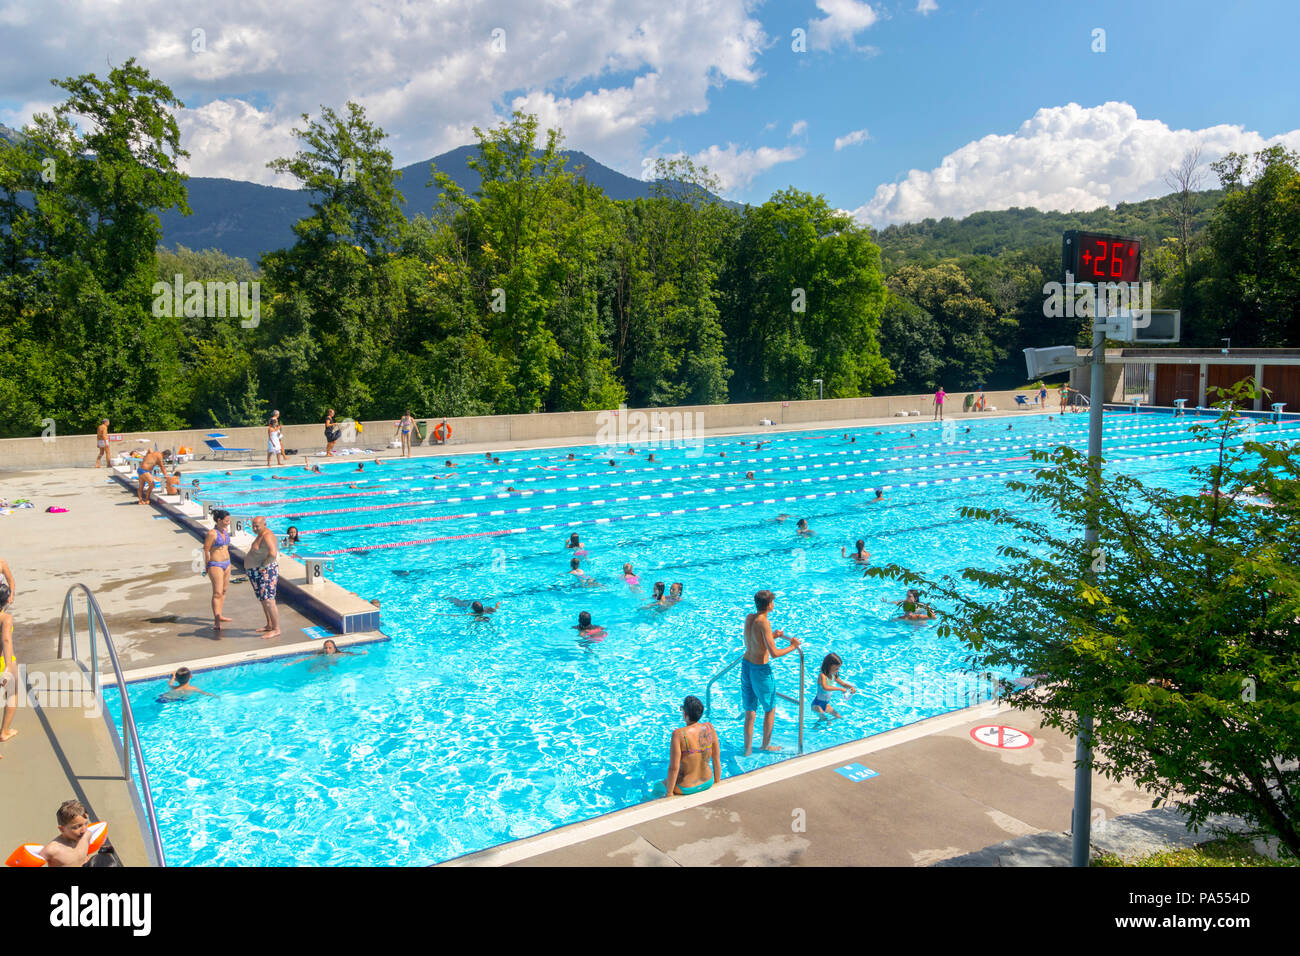 Air öffentliches Schwimmbad im Arena Sportiva, Tesserete Schweiz Lido  Berge, Natur, Europa öffnen Stockfotografie - Alamy